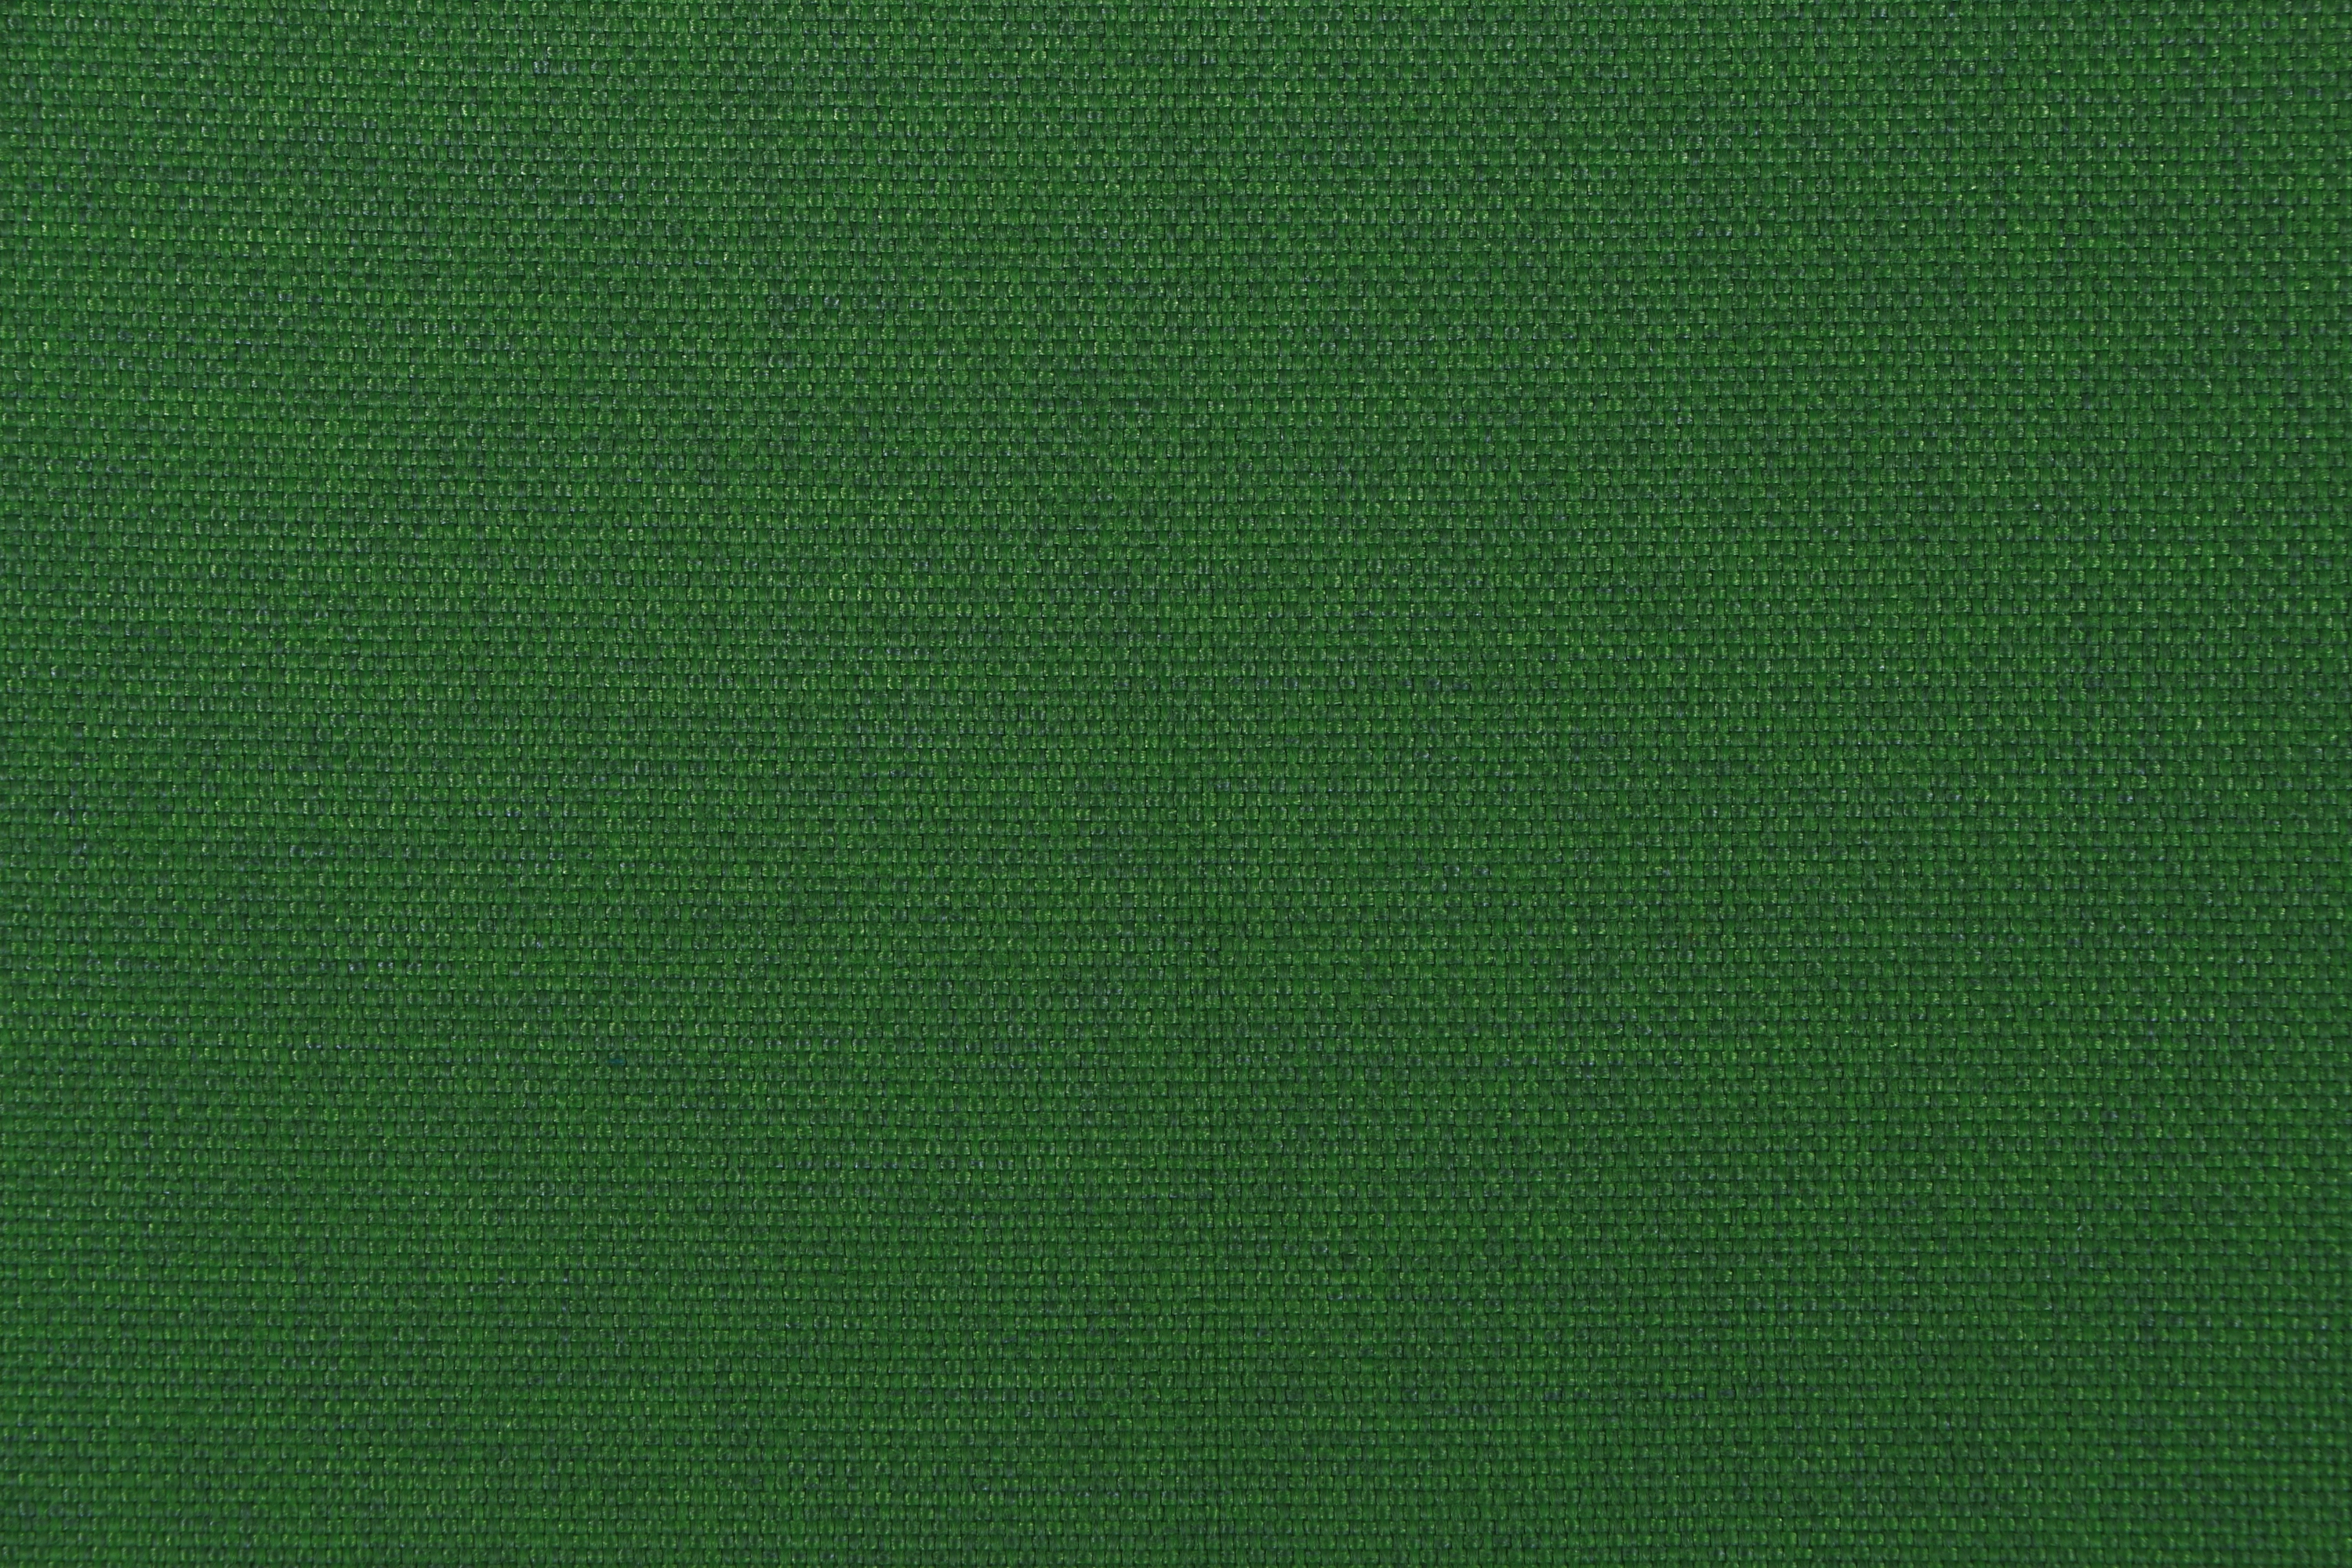 Siena Garden Sesselauflage 48 3 cm x x cm OBI Musica 100 cm Grün bei kaufen